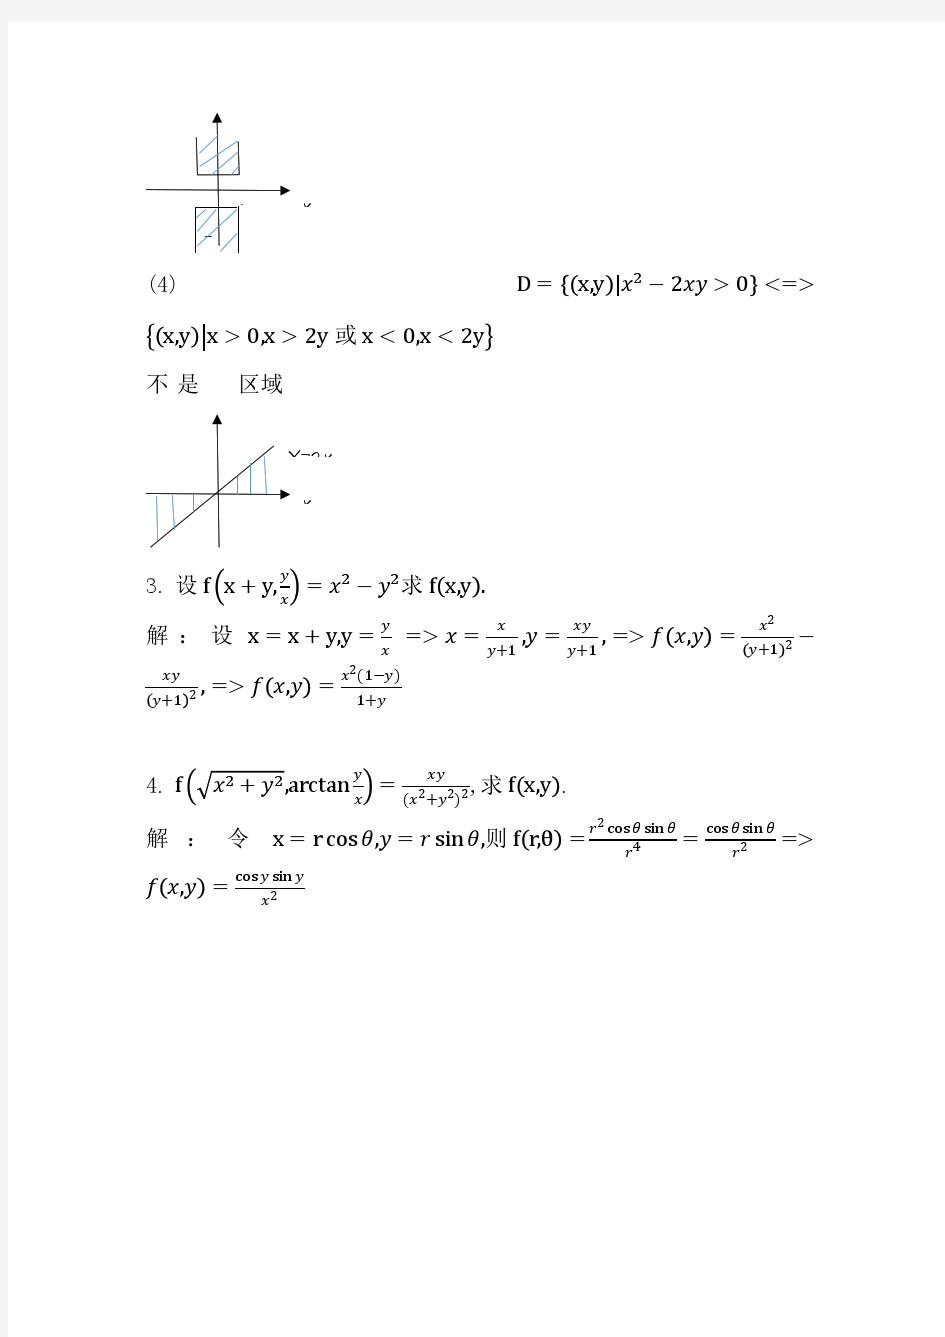 大学数学微积分(下) 第三版 李辉来 习题详解